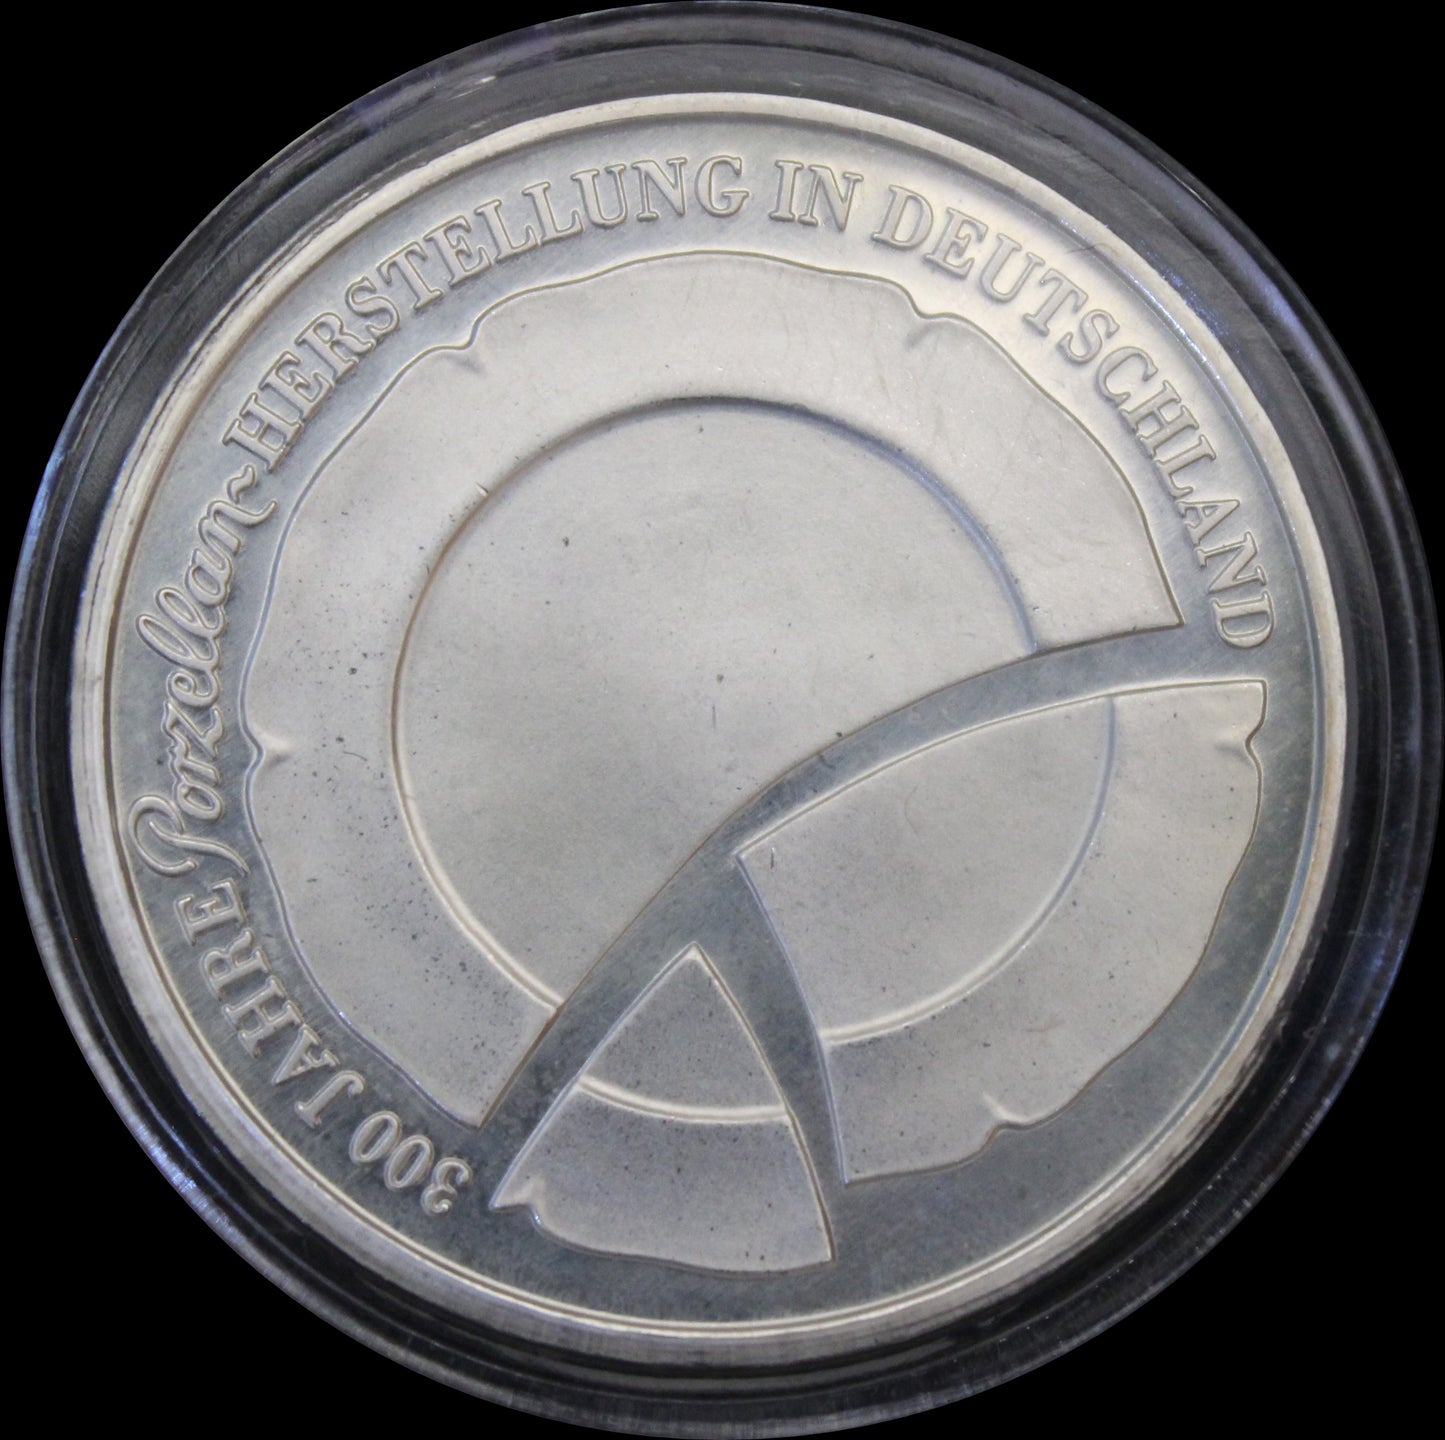 300 JAHRE PORZELANHERSTELLUNG IN DEUTSCHLAND, Serie 10 € Silber Gedenkmünzen Deutschland, Stempelglanz, 2010